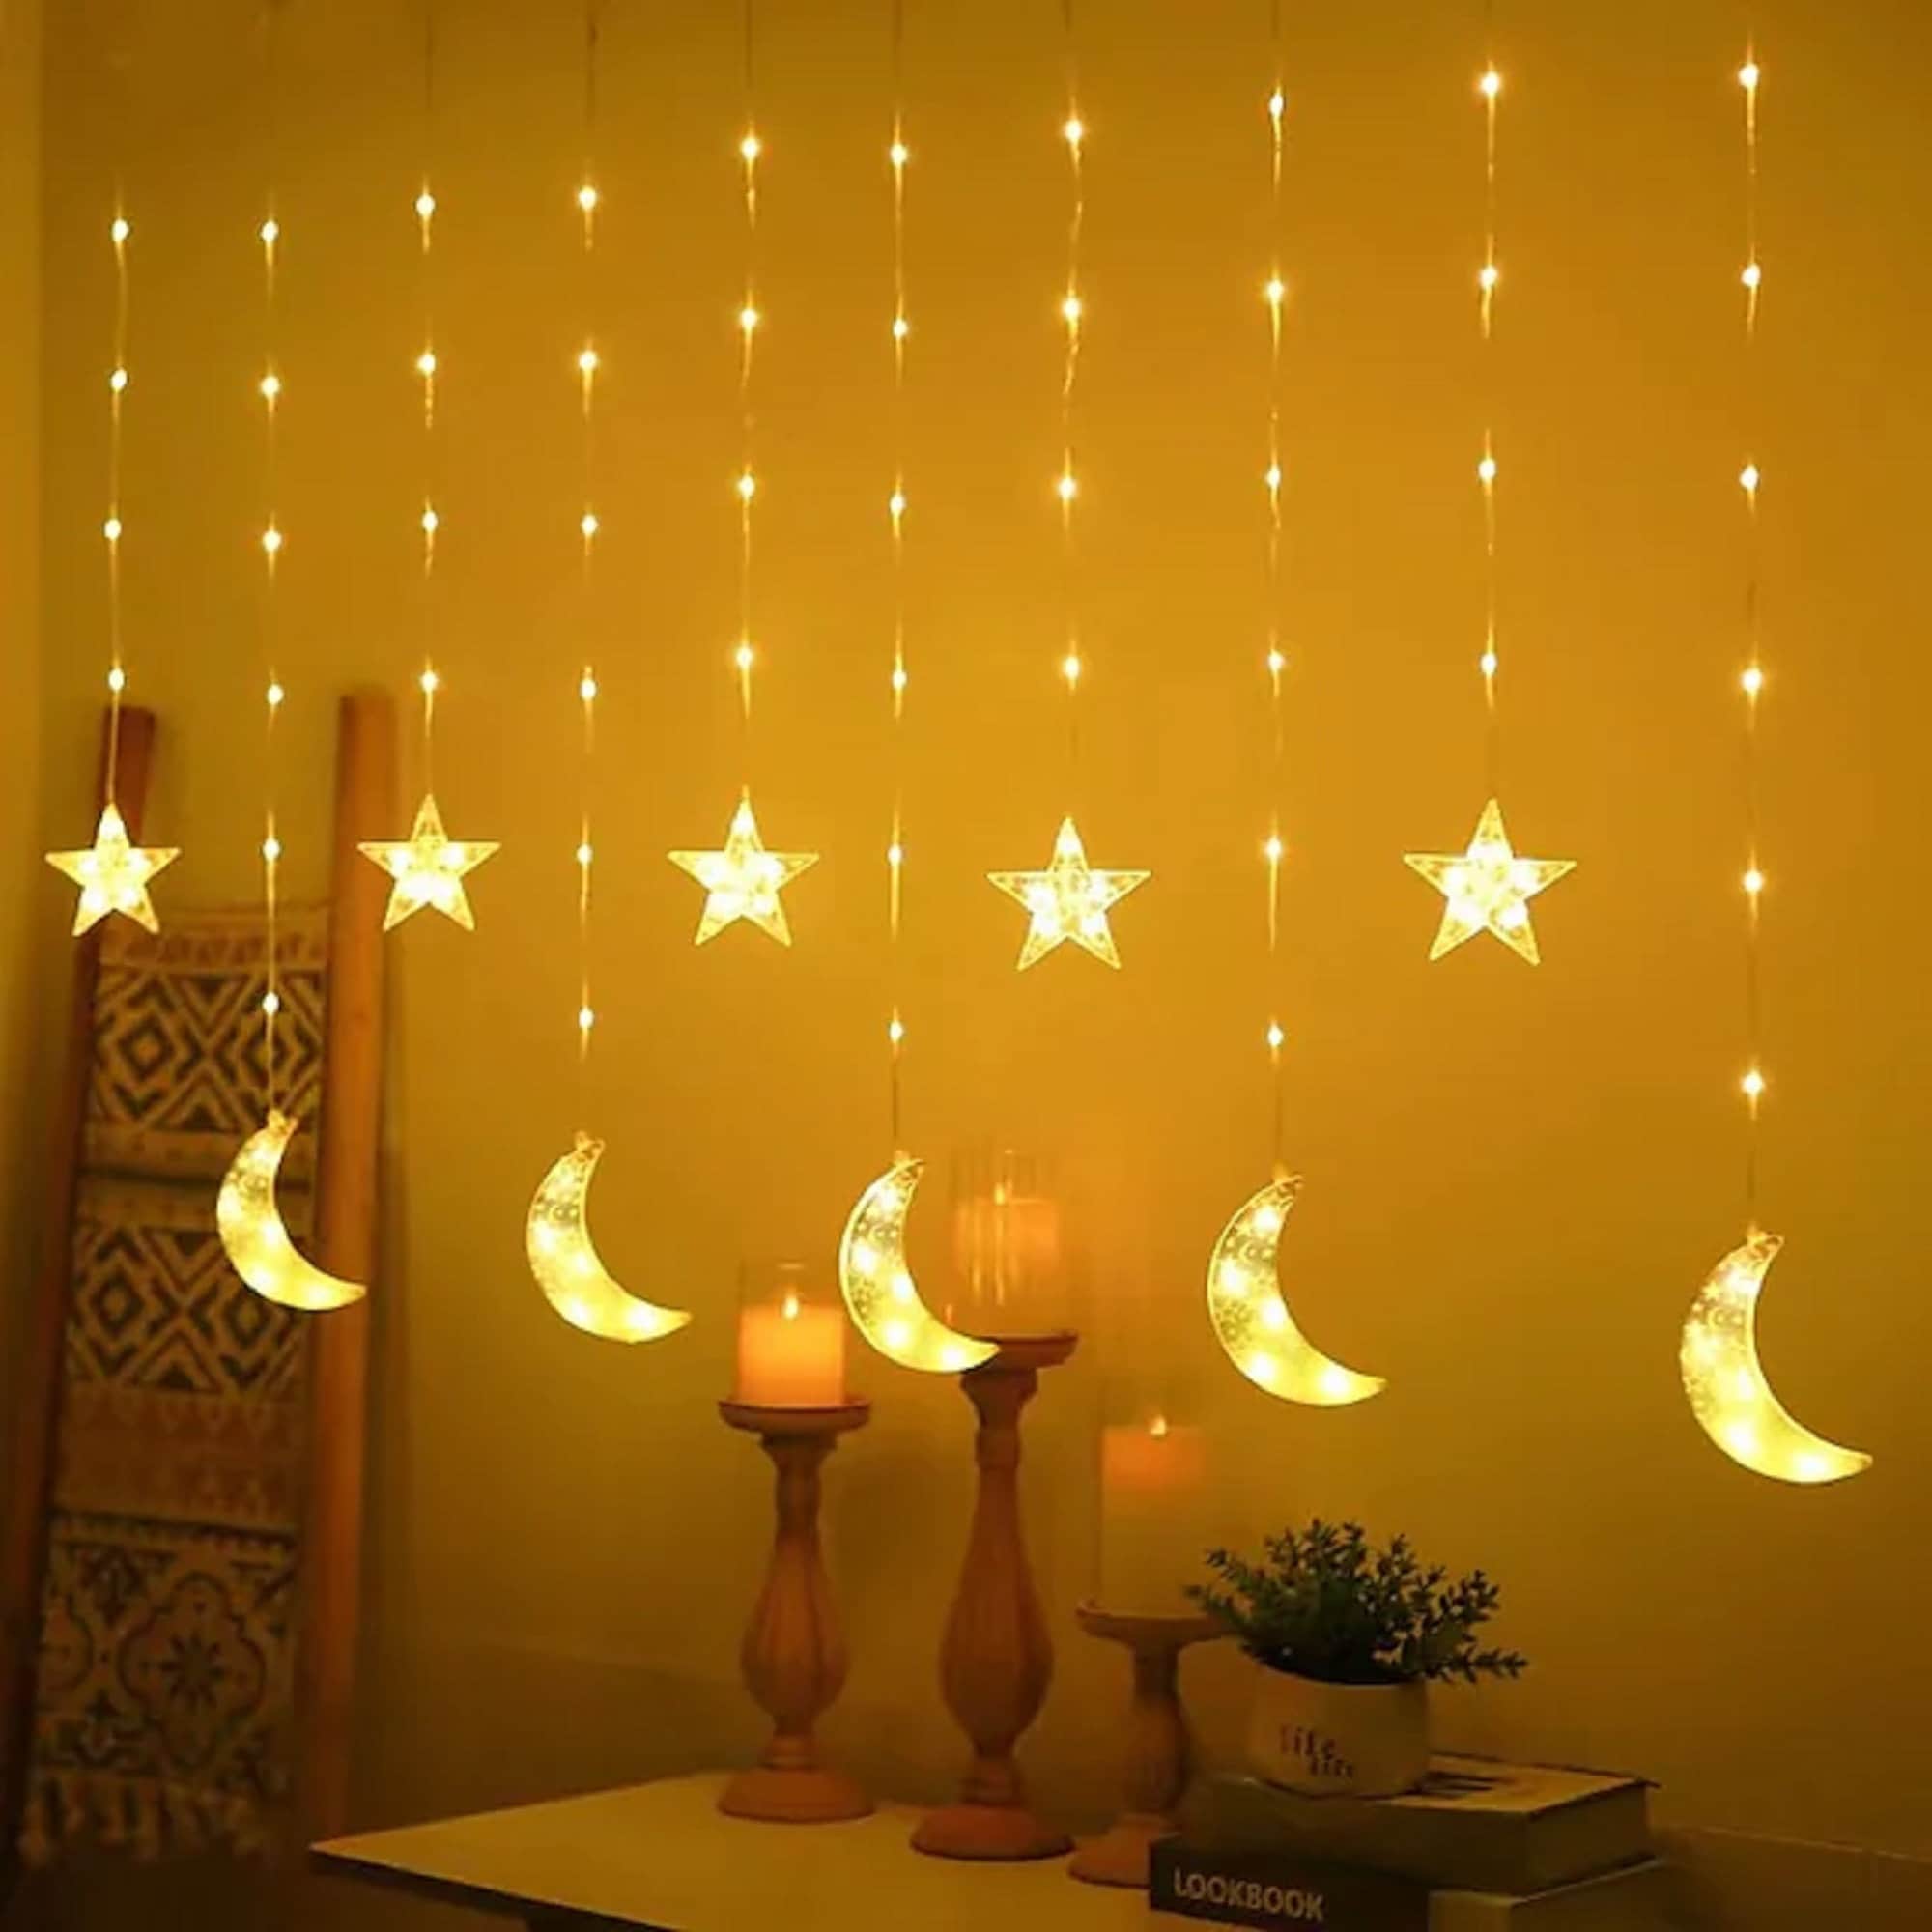 Lumières féeriques du Ramadan, 1,65 mètres, 10 leds, guirlande lumineuse  colorée de l'Aïd Moubarak, décoration Star Moon Ramadan